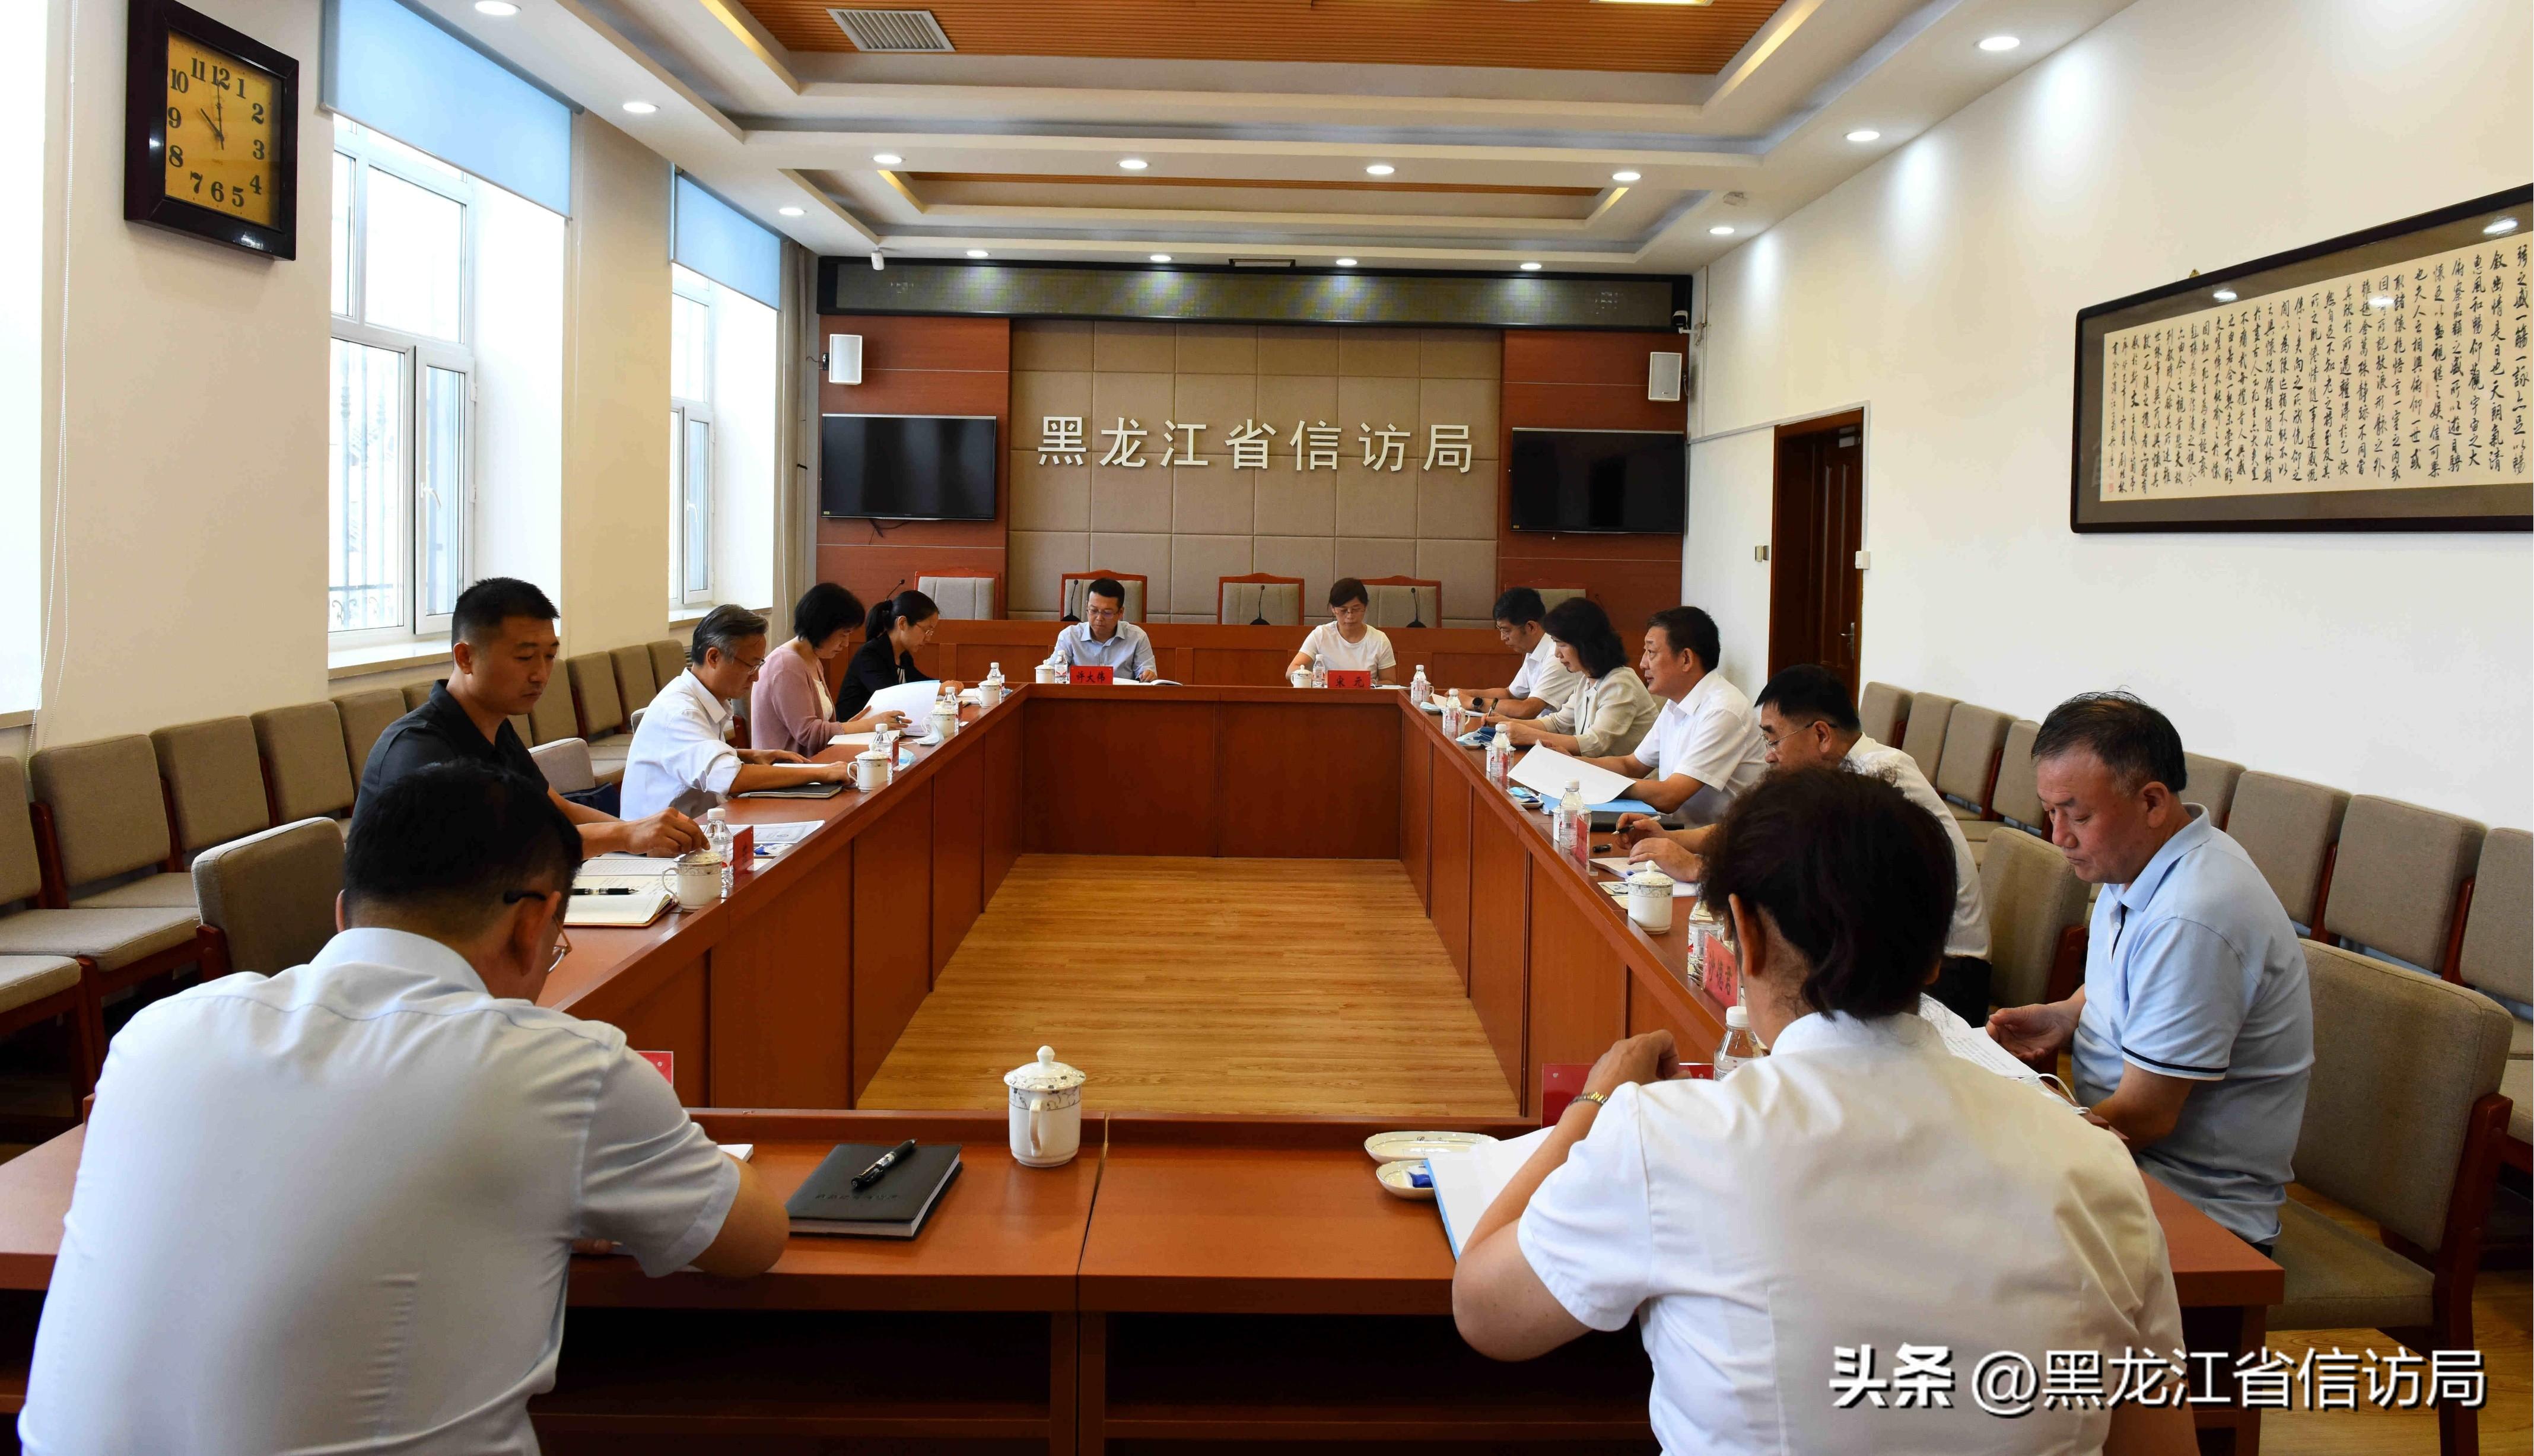 国家信访局调研组到黑龙江调研智能平台和投诉监督建设运行情况